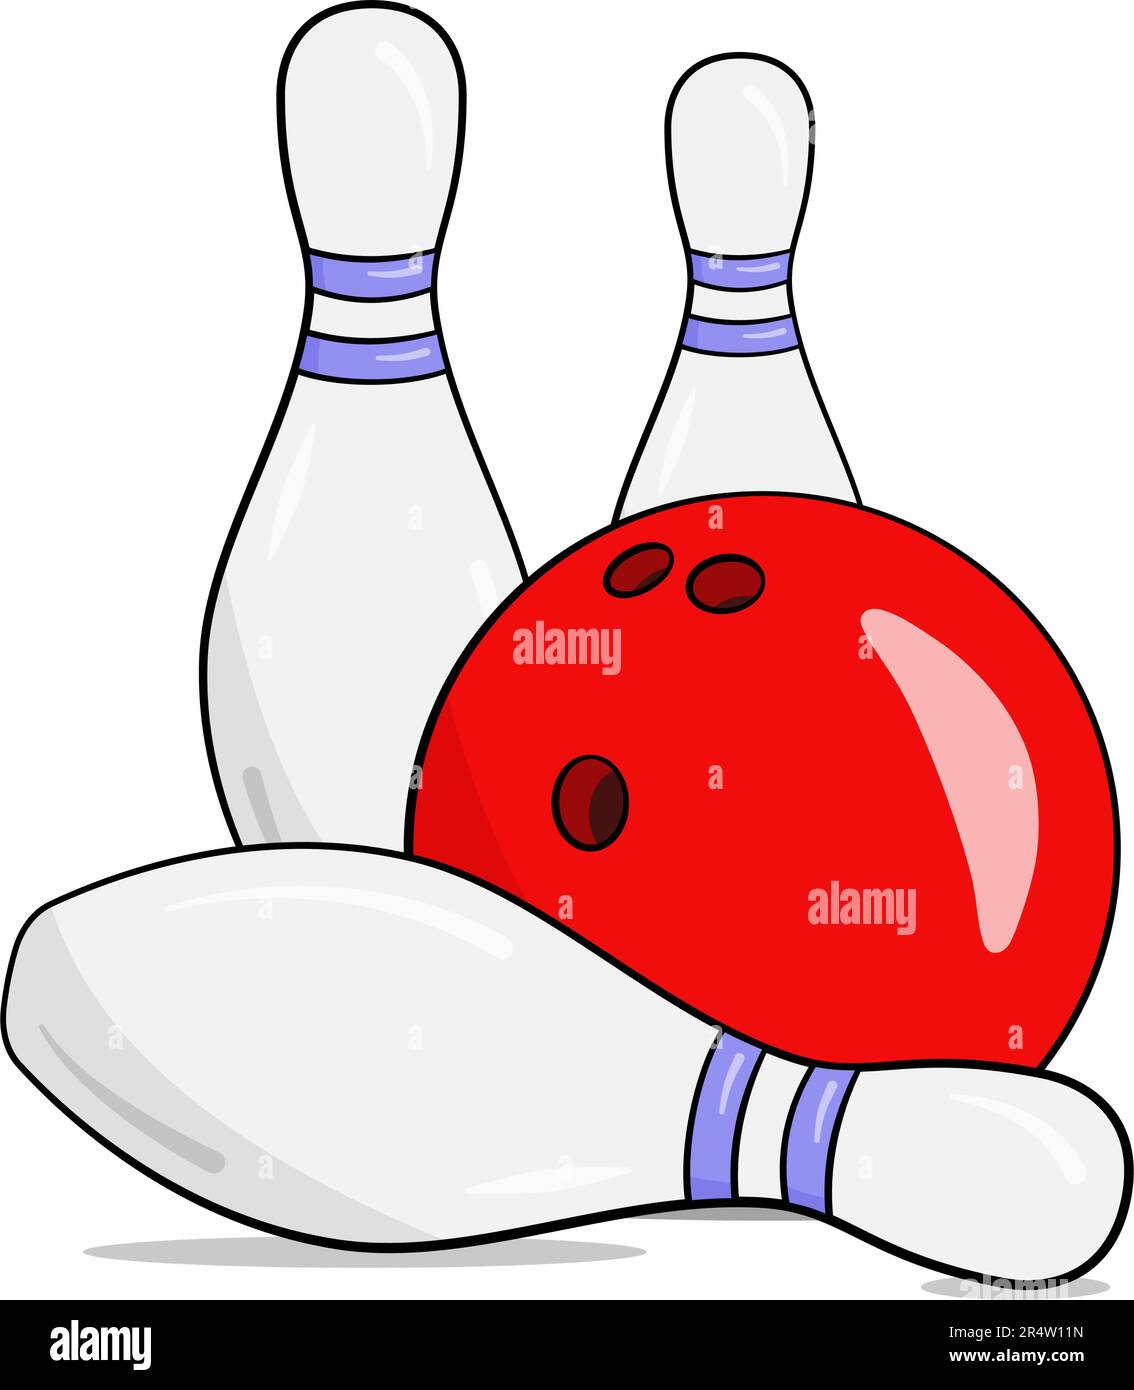 Boule de bowling verte et trois épingles. Dessin animé. Illustration vectorielle. Isolé sur fond blanc Illustration de Vecteur